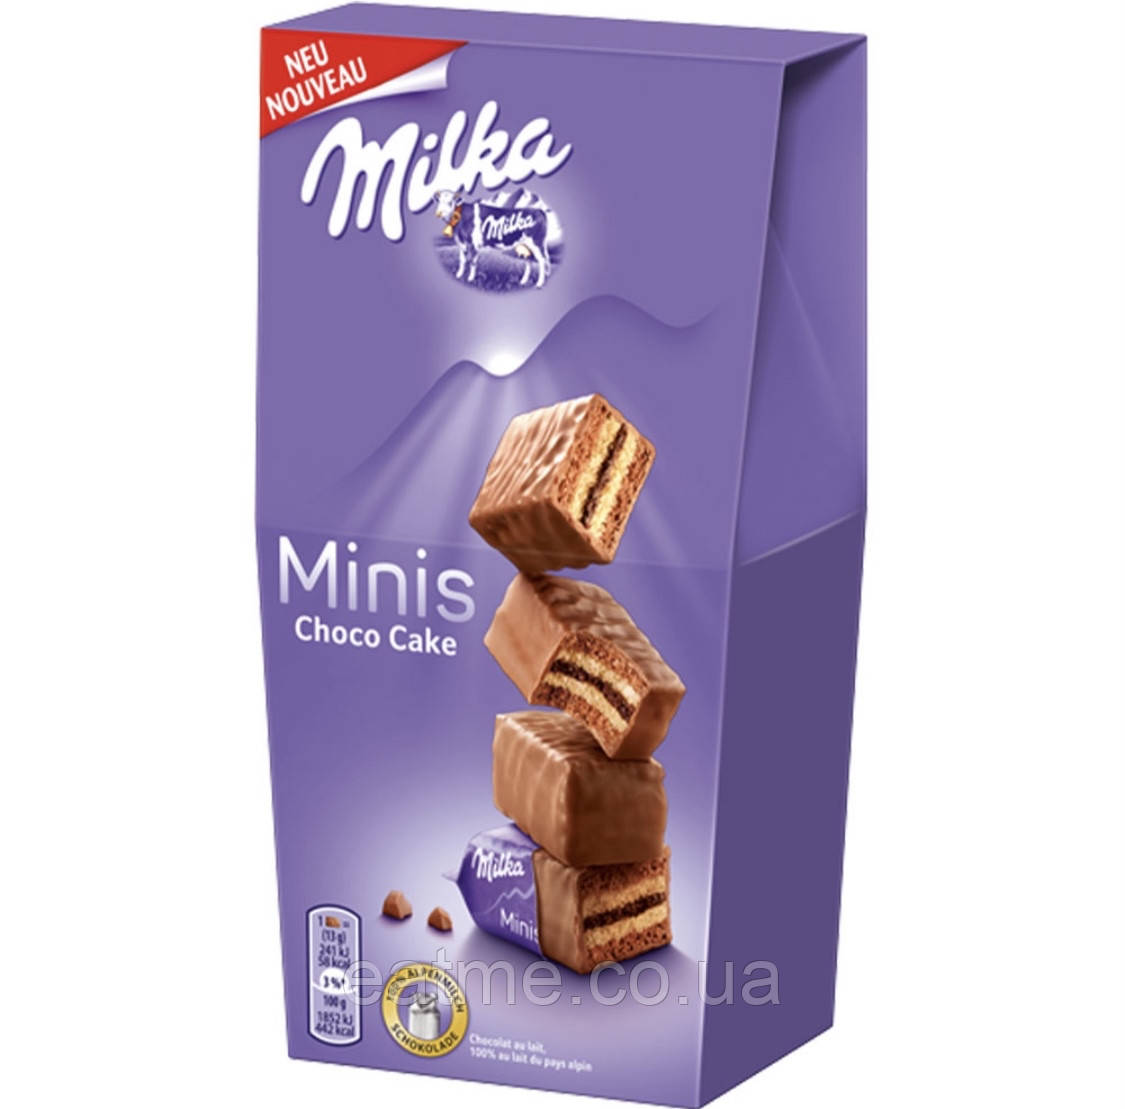 Milka Minis Choco Cake Бісквітне печиво з шоколадною начинкою в молочному шоколаді 117g